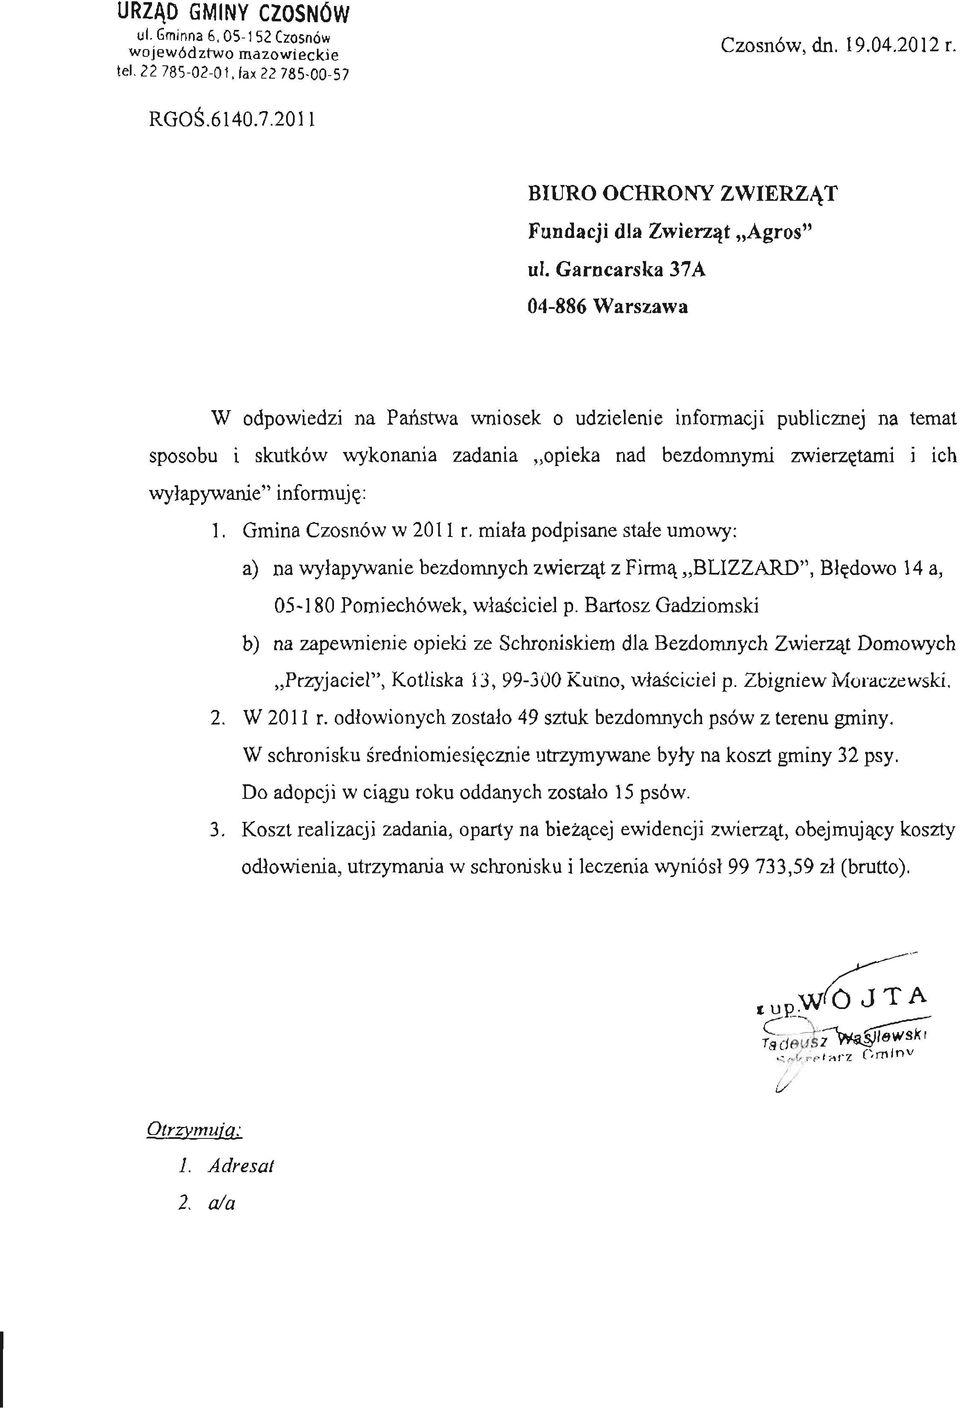 Gmina Czosnów w 2011 r. miała podpisane stałe umowy: a) na wyłapywanie bezdomnych zwierząt z Firmą BLIZZARD", Błędowo 14 a, 05-180 Pomiechówek, właściciel p.